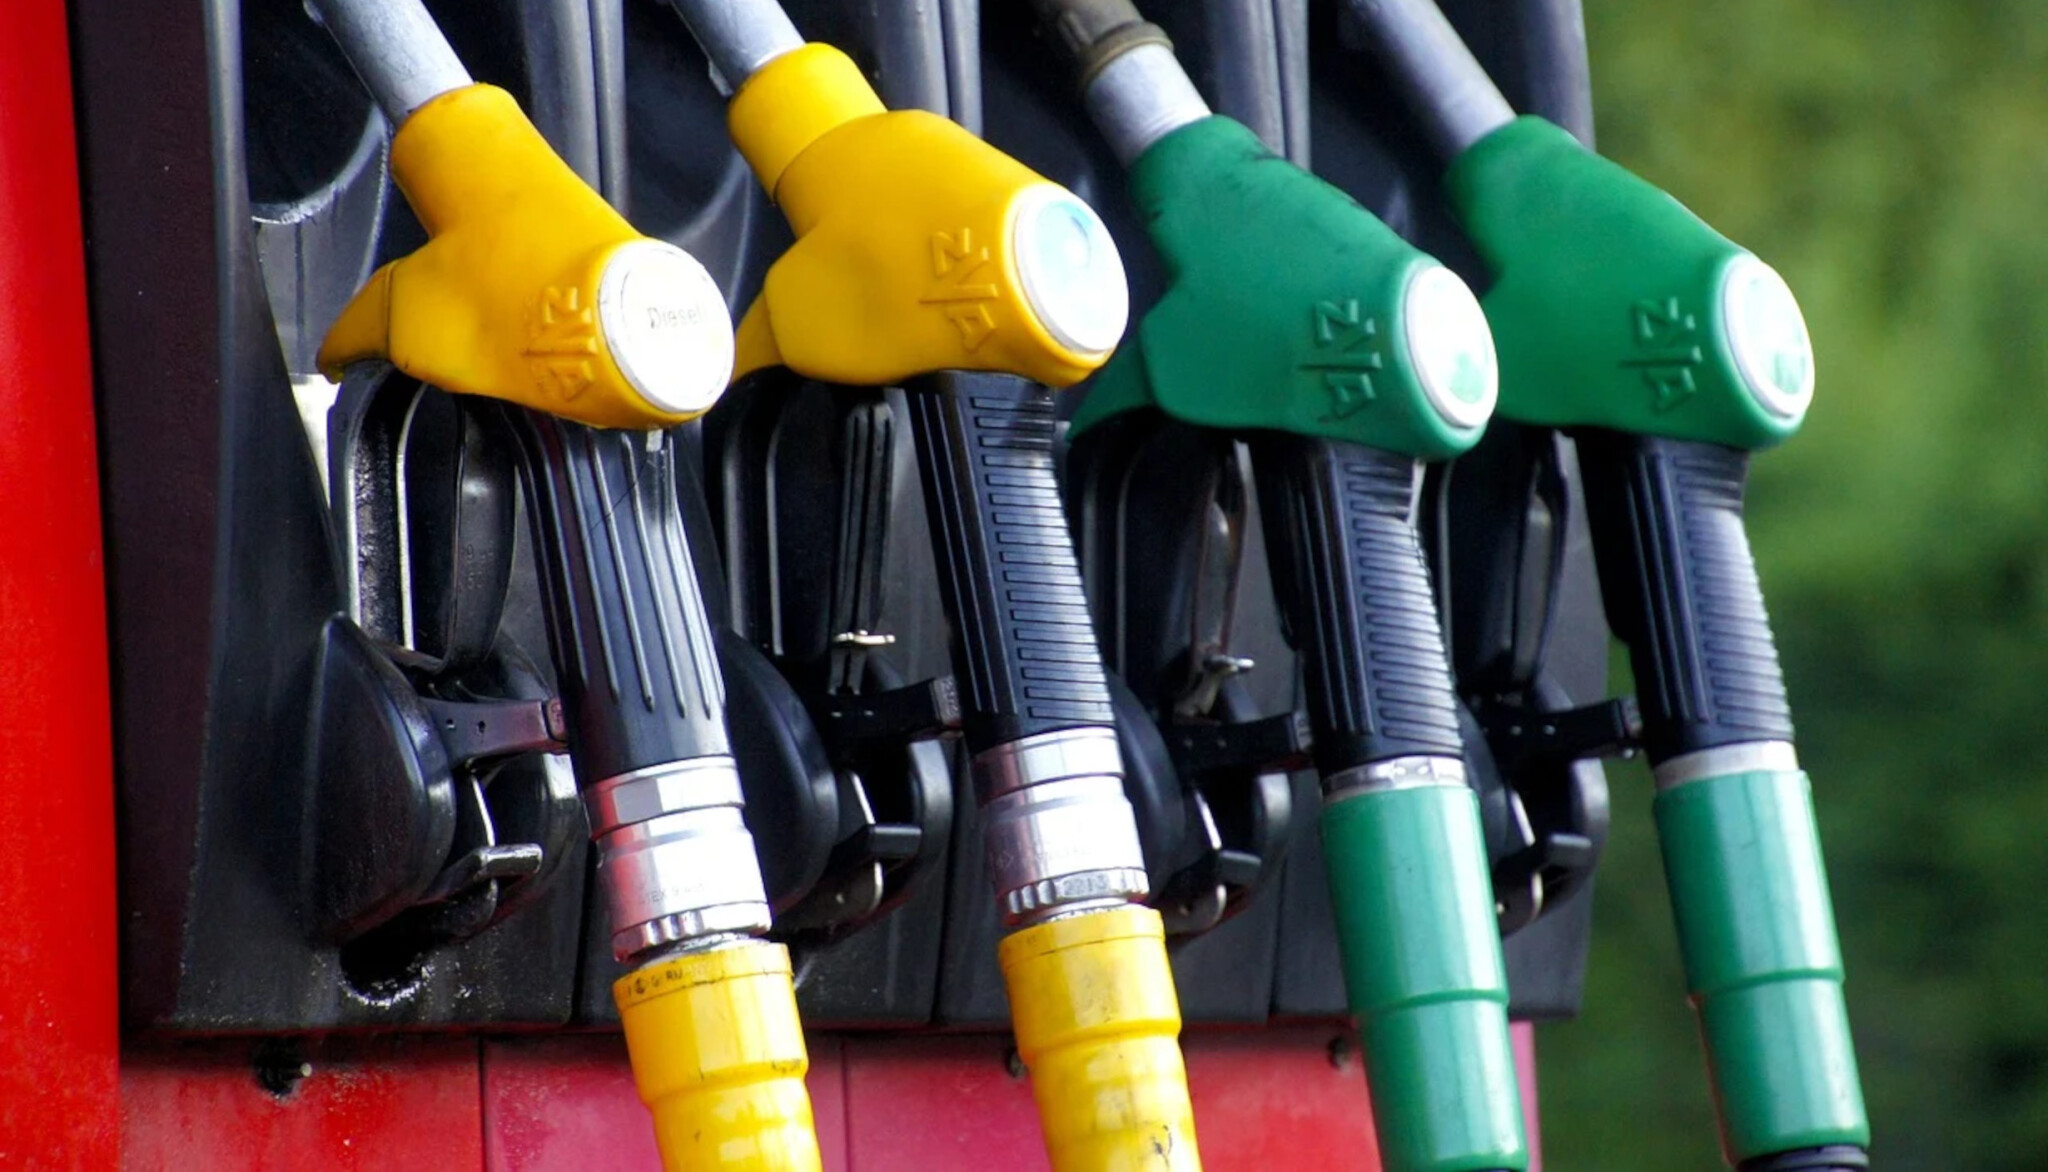 Ceny pohonných hmot nadále prudce stoupají. Meziročně činí rozdíl už osm korun